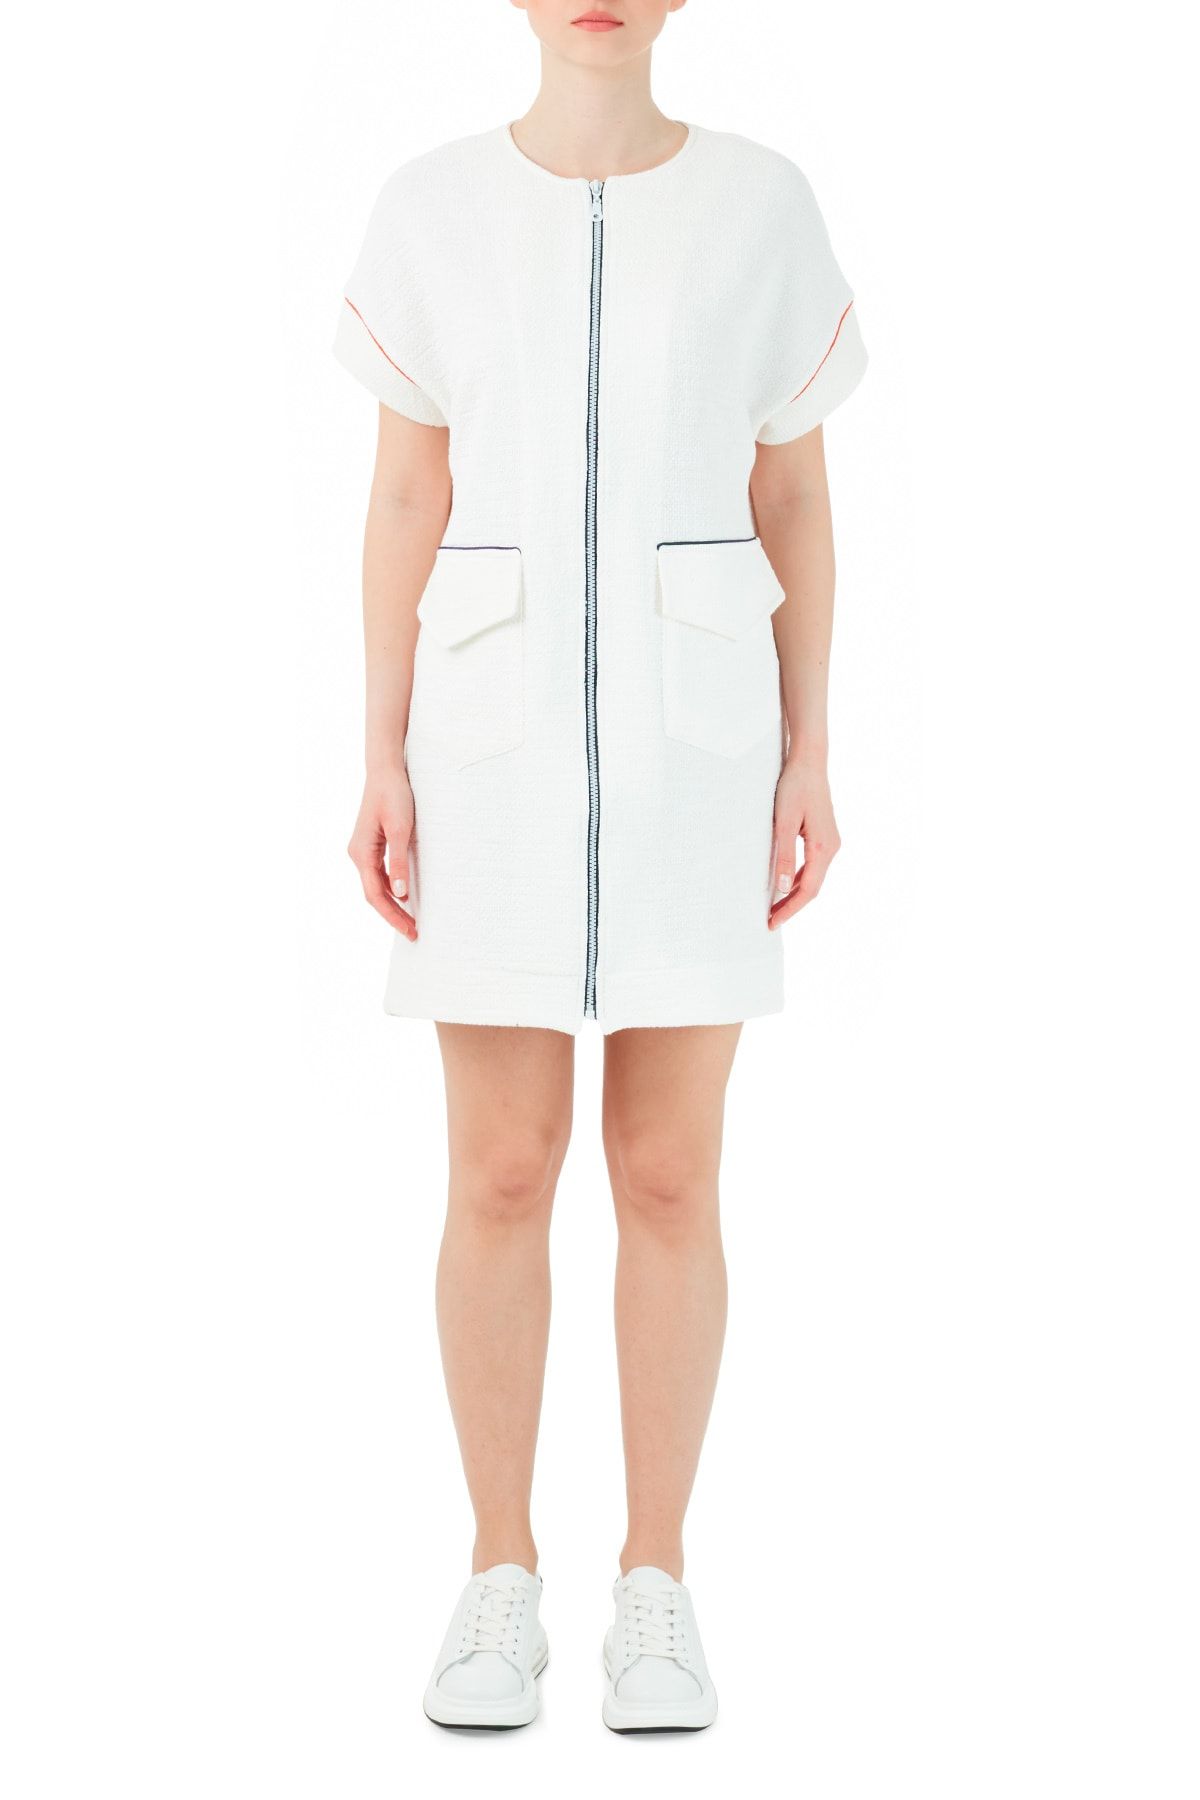 Ruck & Maul Kadın Beyaz Pamuklu Fermuarlı Cepli Mini Elbise Elbise Rmw19000701